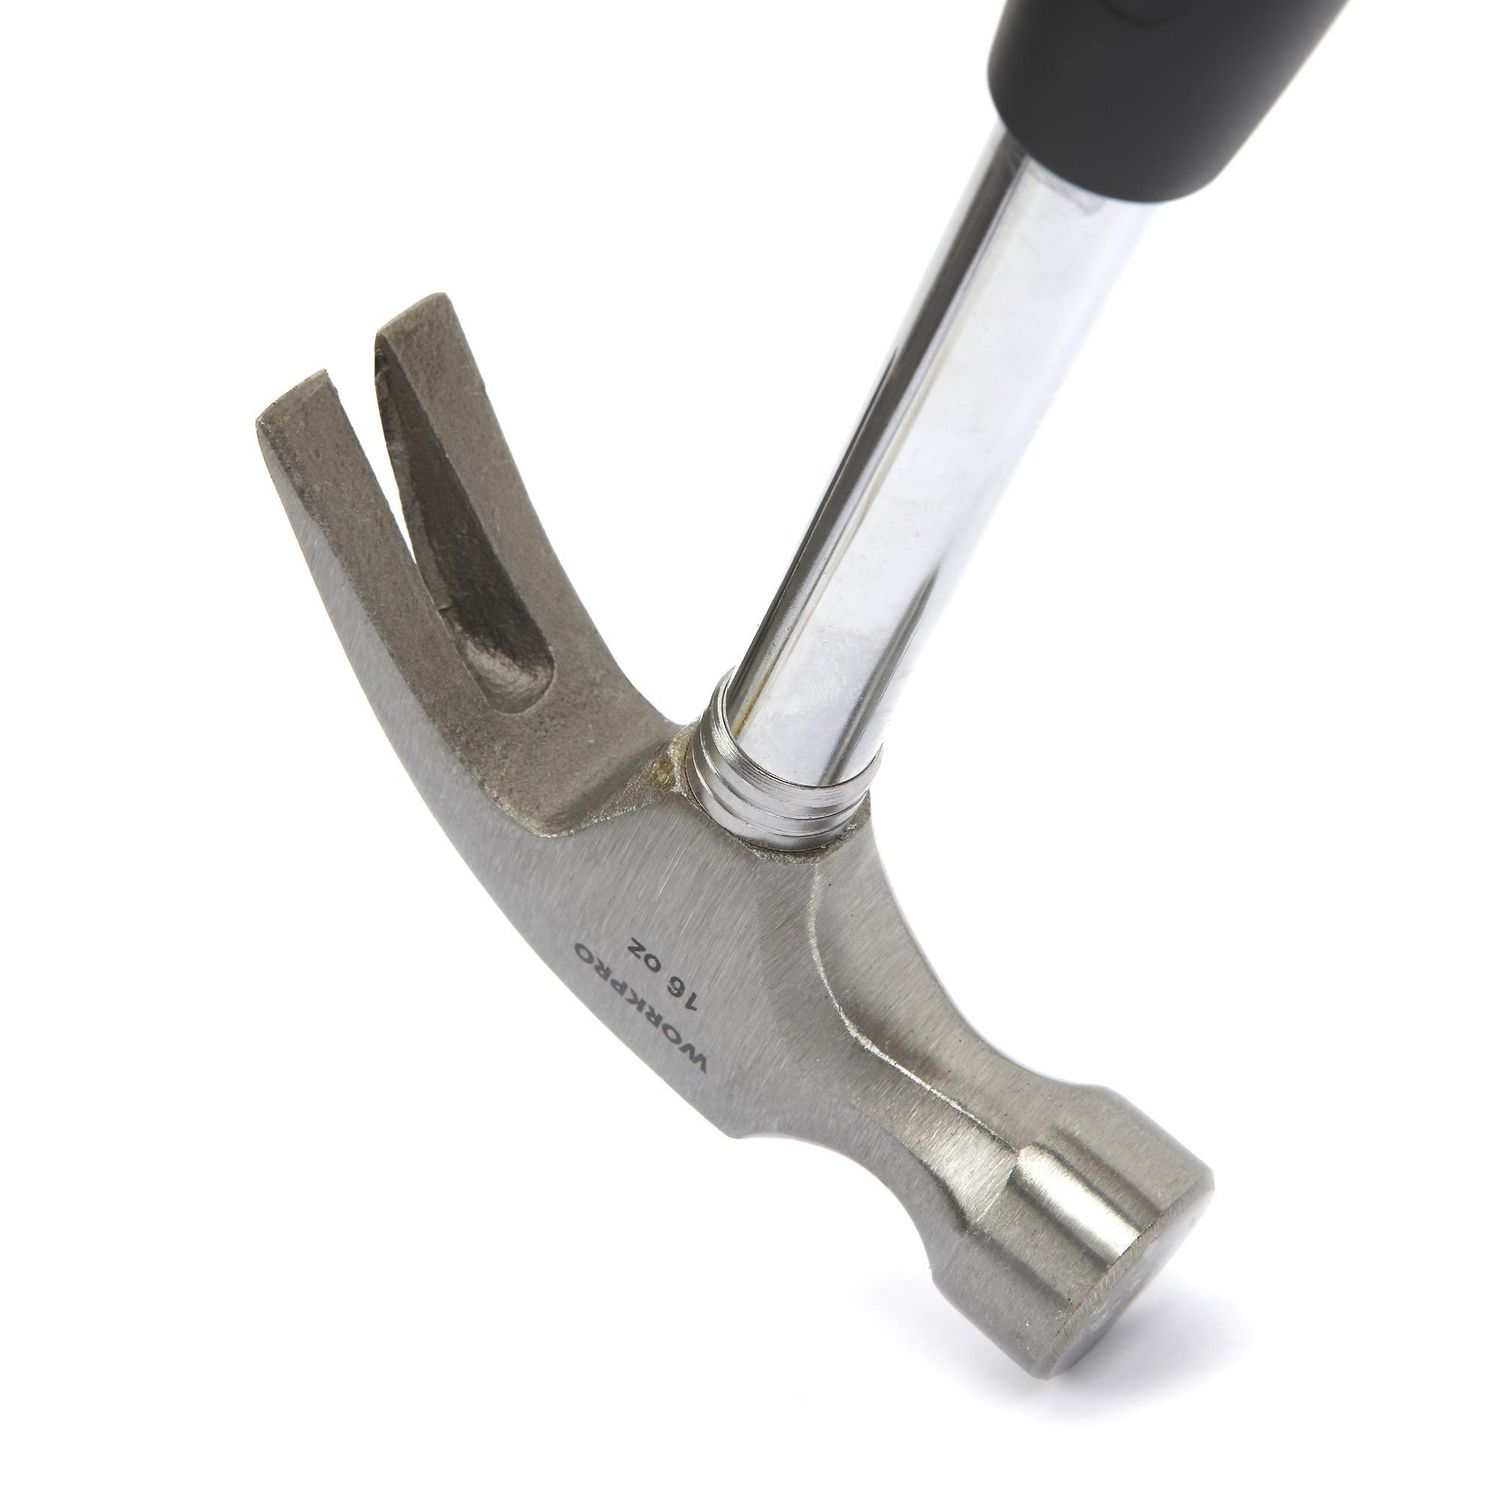 WorkPro 16 Oz Claw Hammer, Non-slip TPR Handle